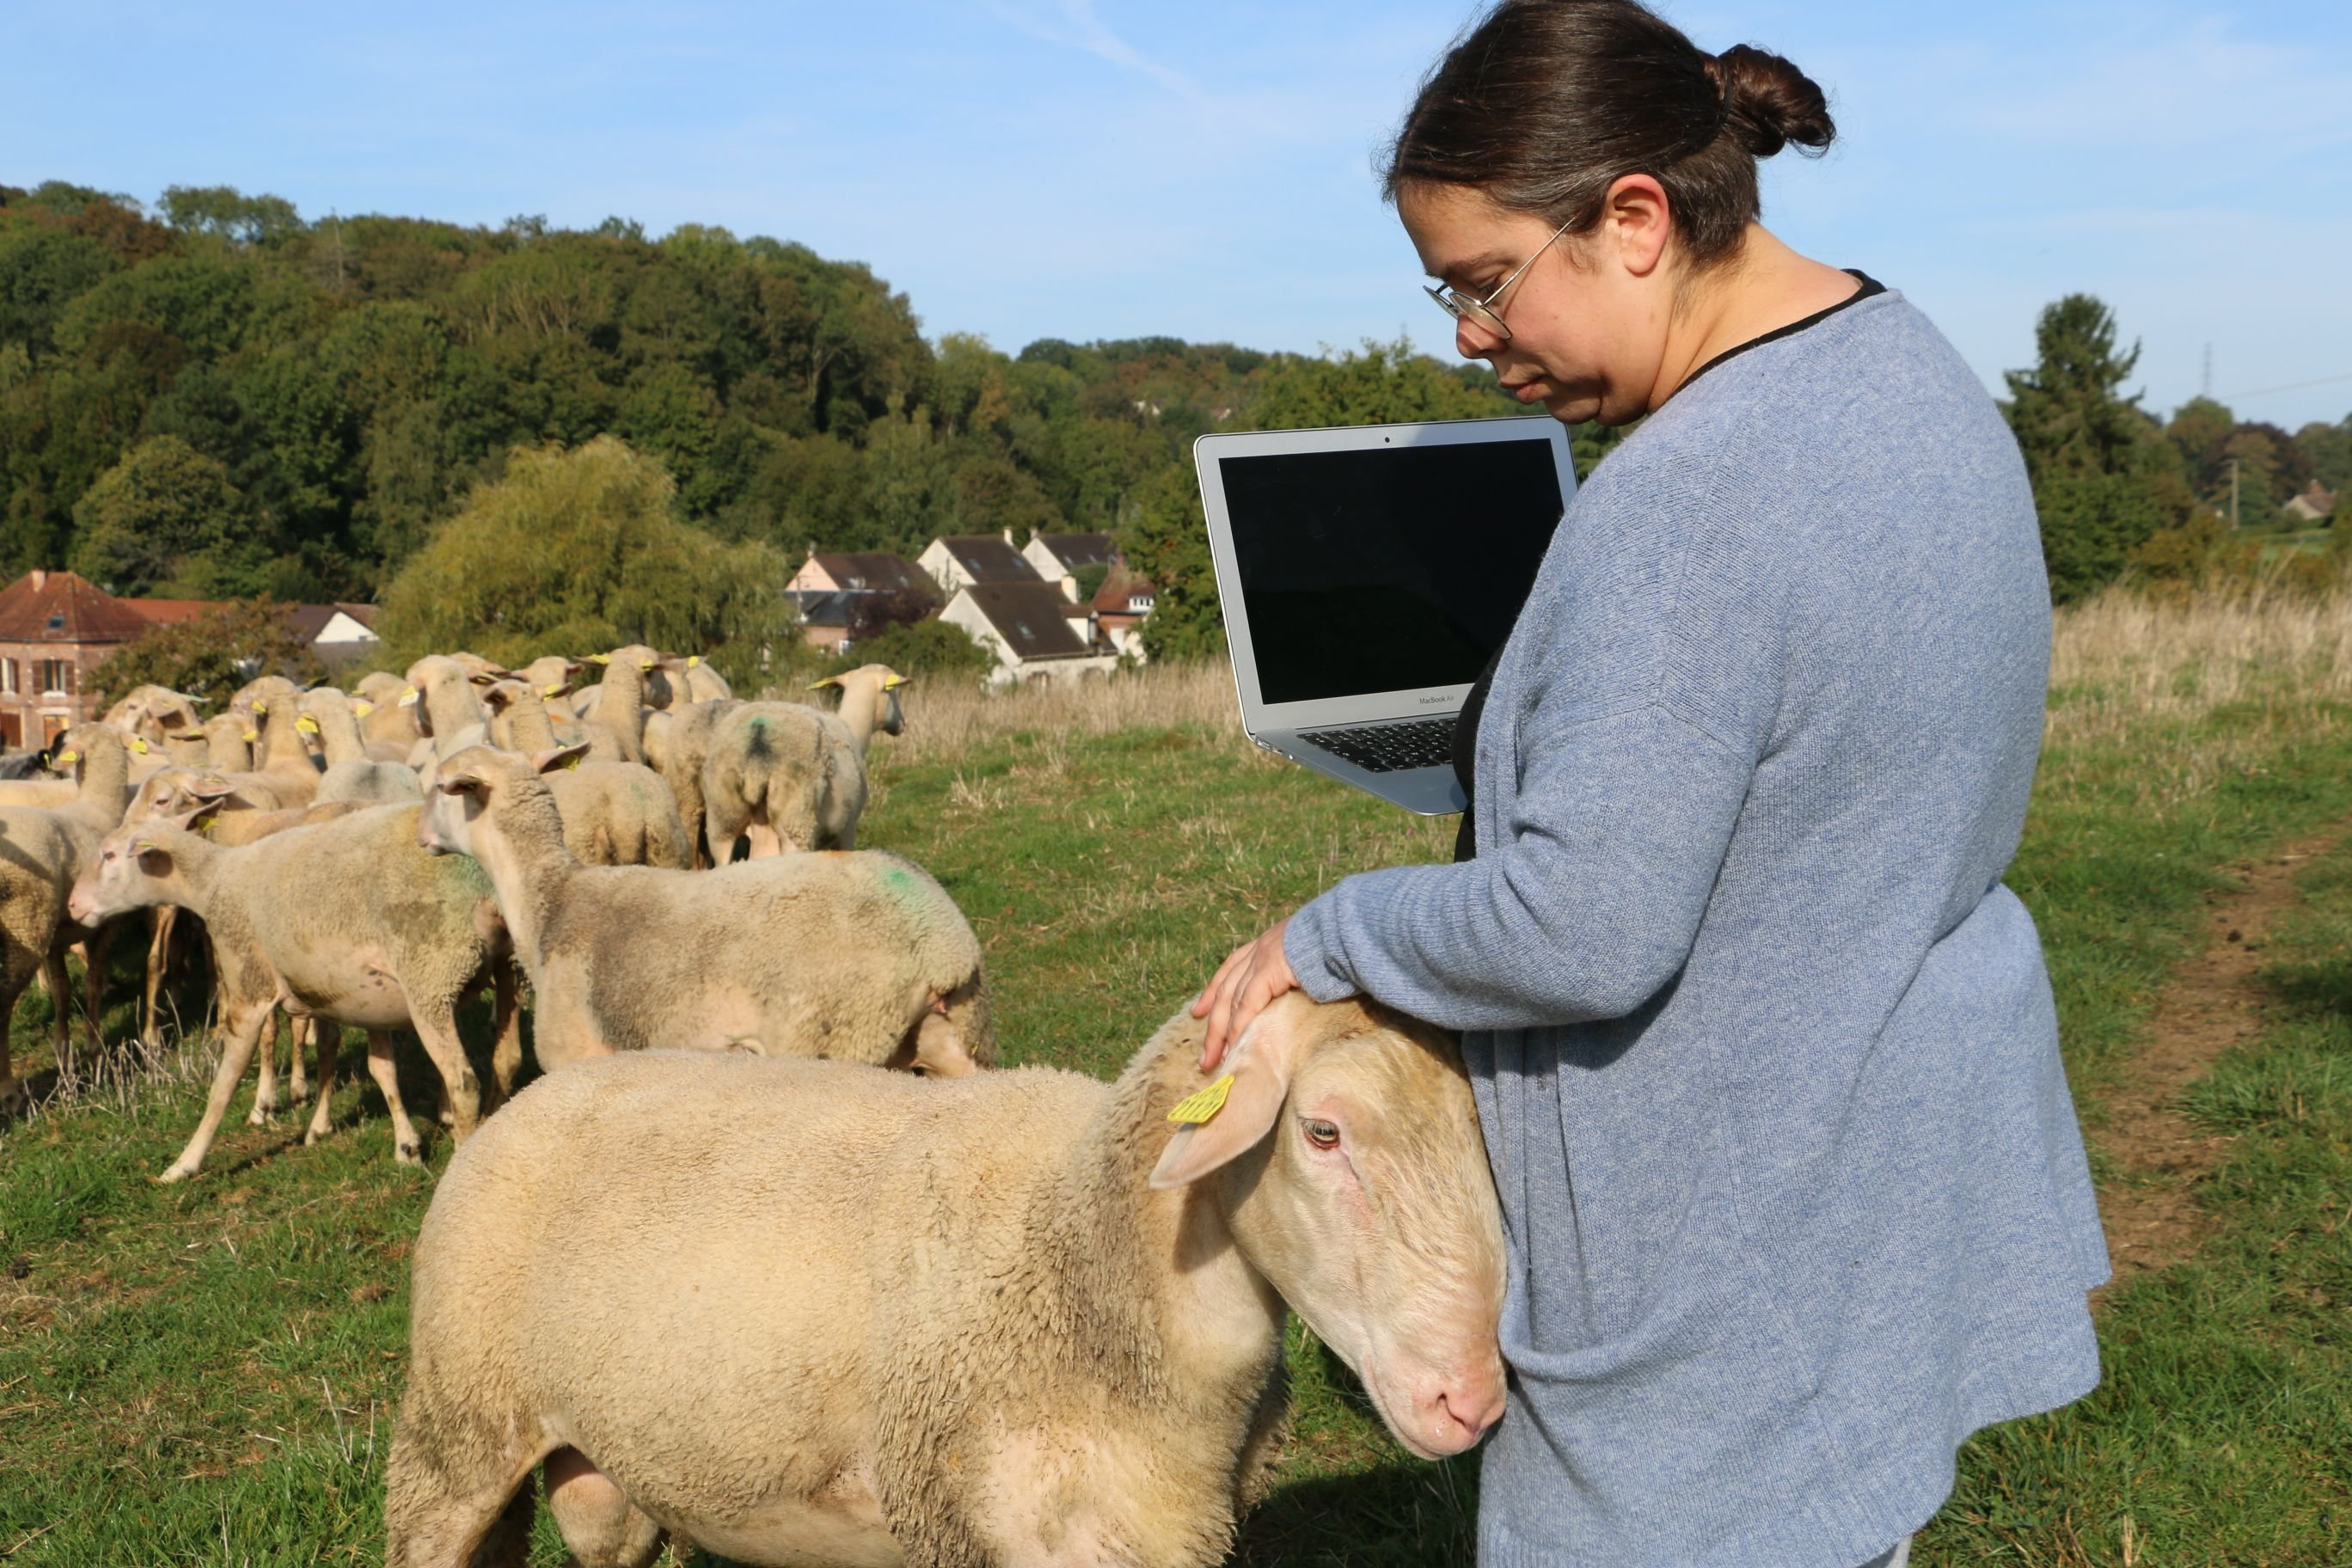 Le Mesnil-Théribus (Oise), vendredi 6 octobre. Chloé Margerin, 38 ans, fait partie de cette nouvelle génération d'agriculteurs prompts à s'emparer des outils numériques. LP/Juliette Duclos